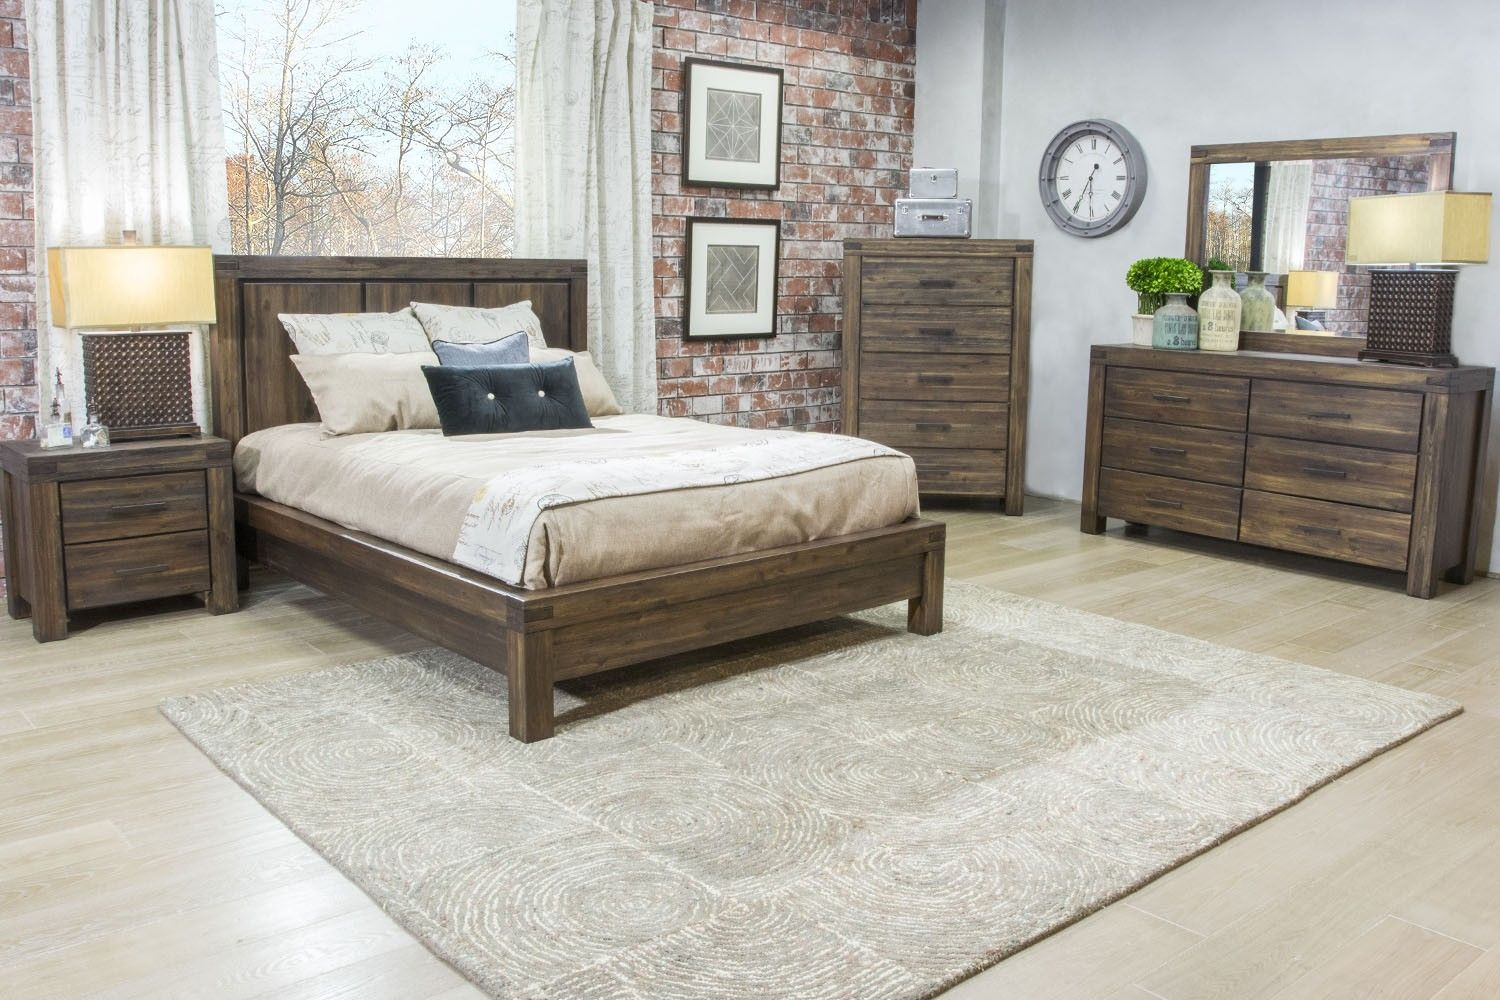 mor furniture king bedroom set